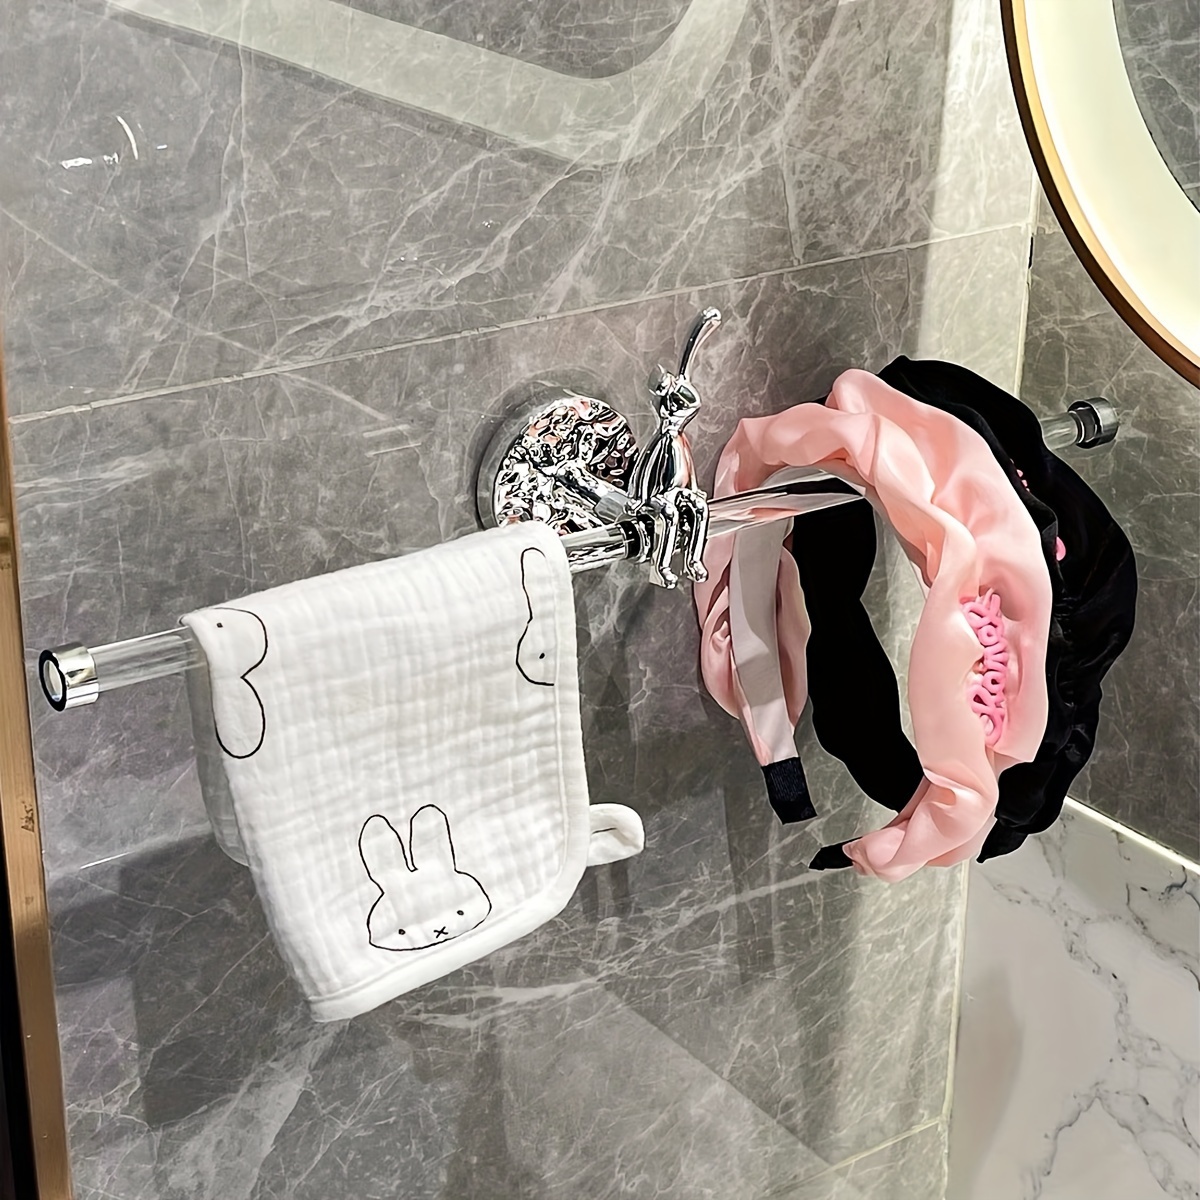 Вешалка для полотенец «Серебряный кролик» в стиле ар-деко, настенный держатель для полотенец для ванной комнаты, конструкция без сверления, длина 30 см, декоративная и функциональная штанга для хранения полотенец для домашнего использования — доступны варианты с одинарным или двойным держателем